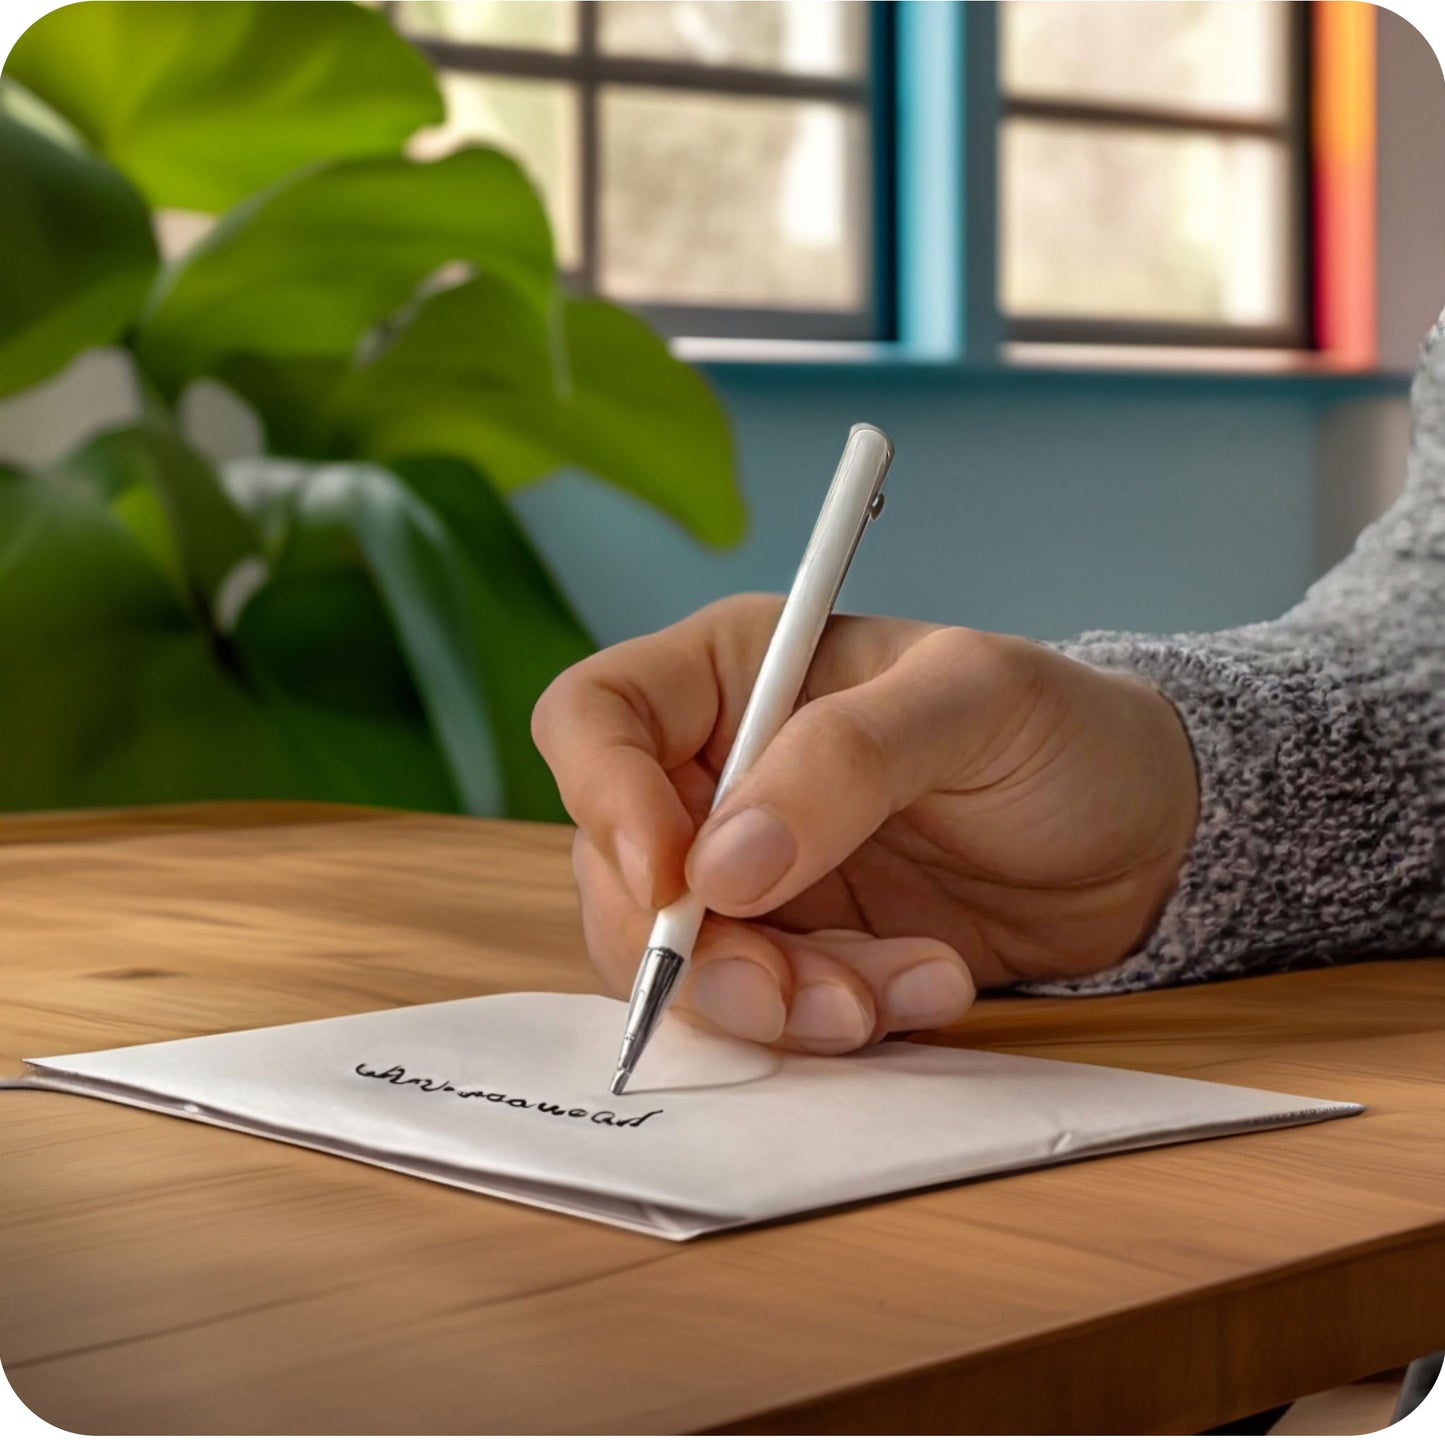 Een afbeelding bij de productfoto waarin iemand een wenskaart aan het schrijven is aan een tafel, in een specifieke en aangepaste sfeervolle omgeving.